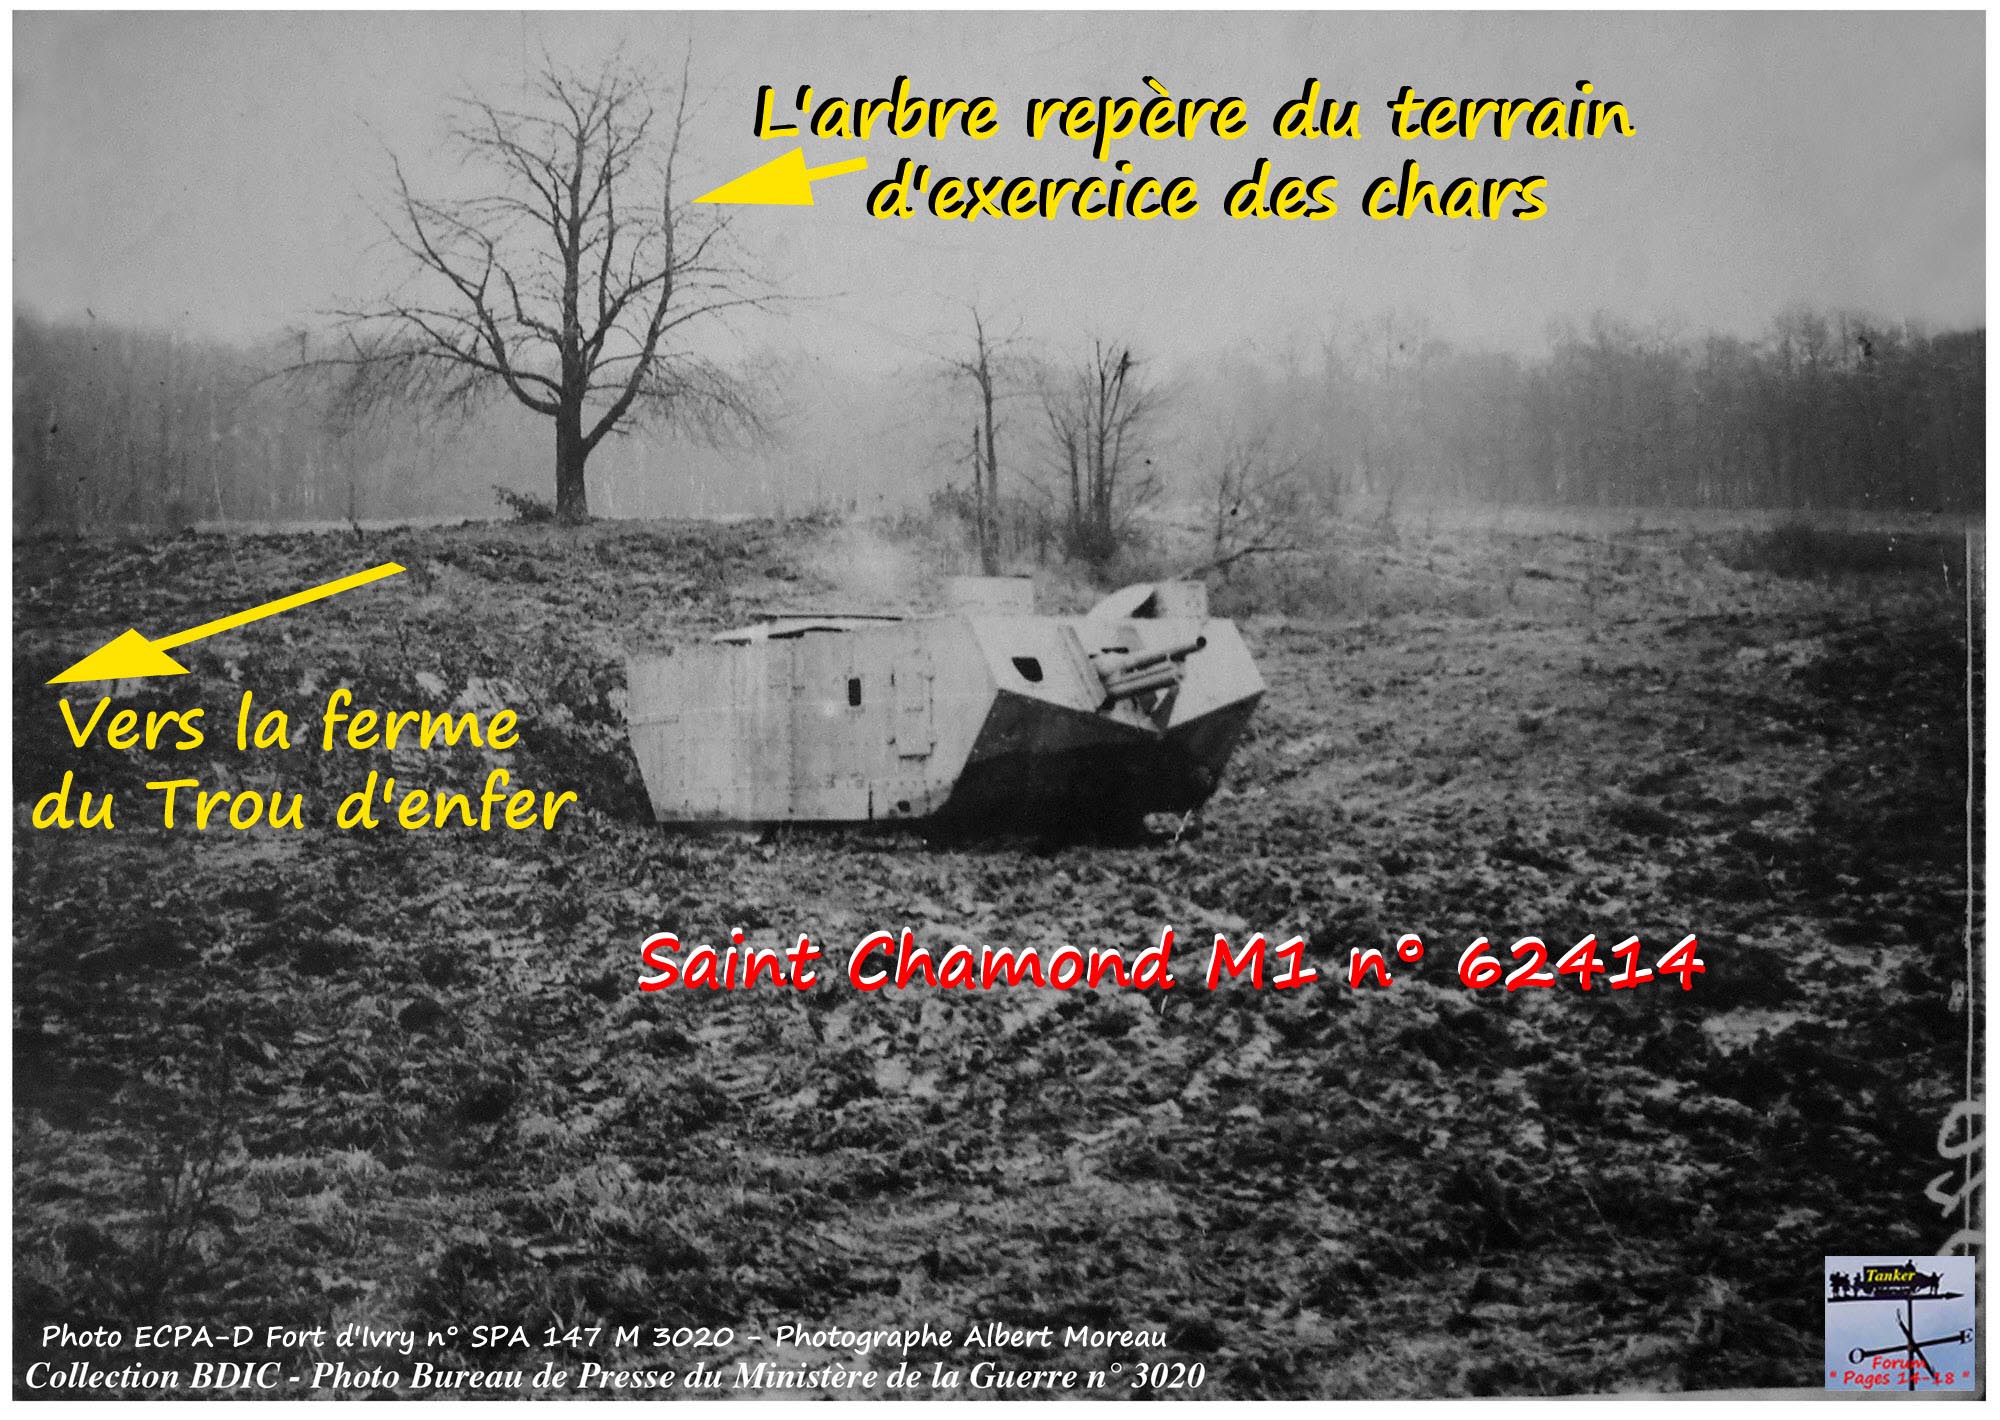 30 - Arbre repère - St Chamond présérie à Marly-le-Roi - Spa 147 M 3020 (01a1).jpg